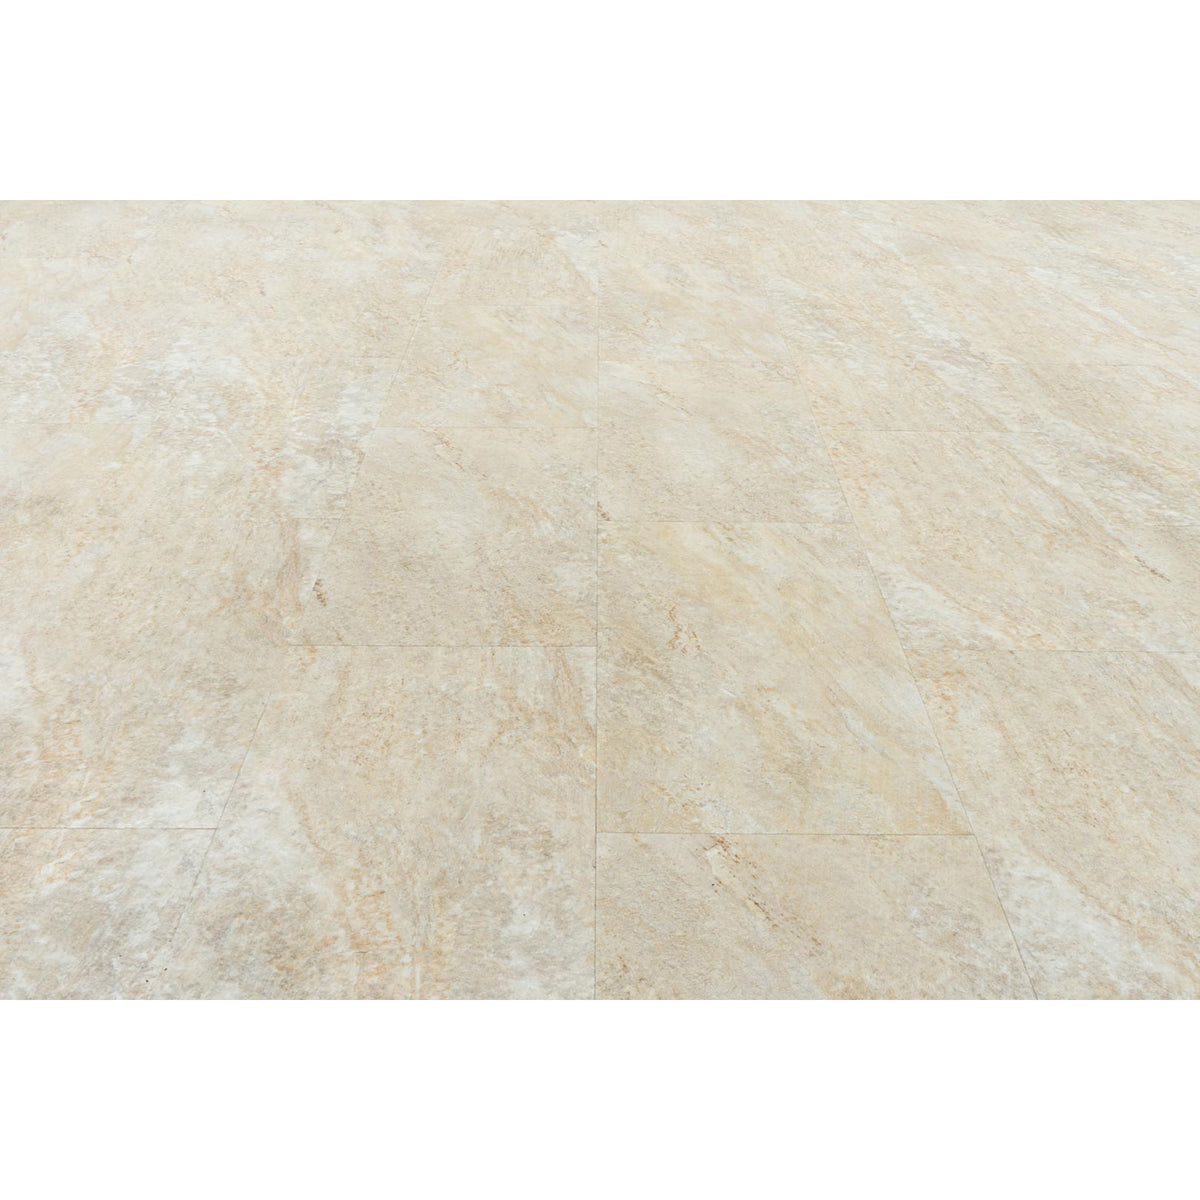 Provenza Floors - Stonescape Luxury Vinyl Plank - Desert View